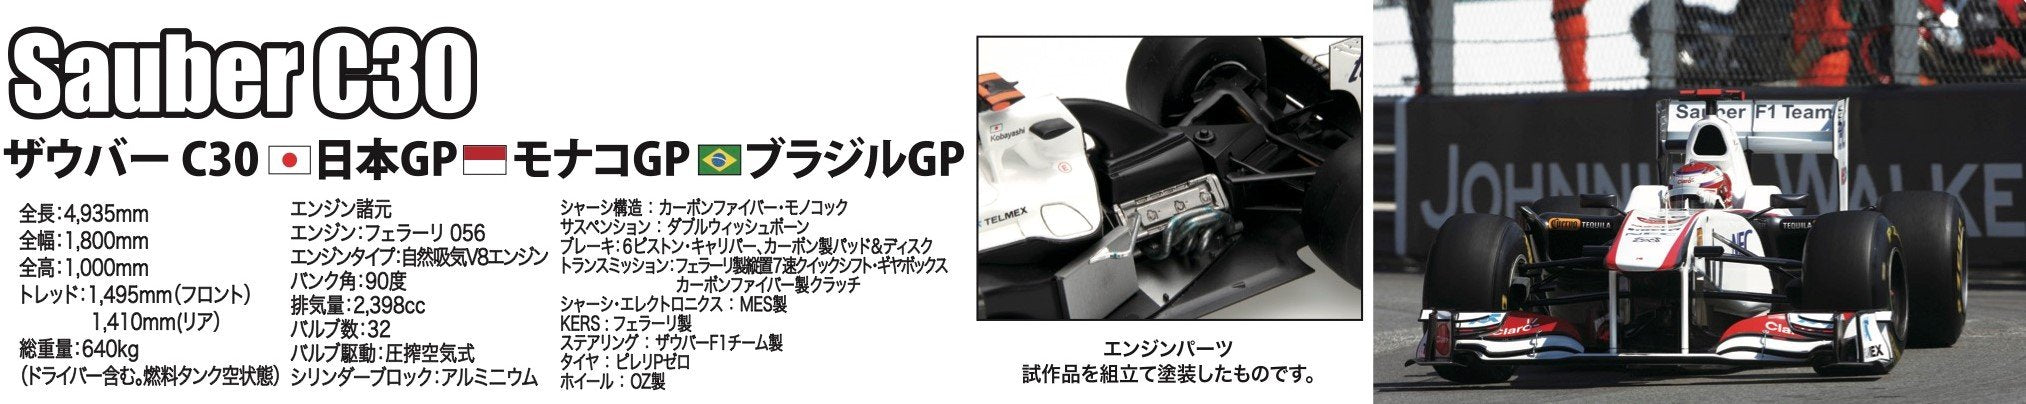 Fujimi Gp22 092089 Sauber C30 (Japon / Monaco / Brésil Gp) 1/20 Voitures de course à l'échelle japonaise